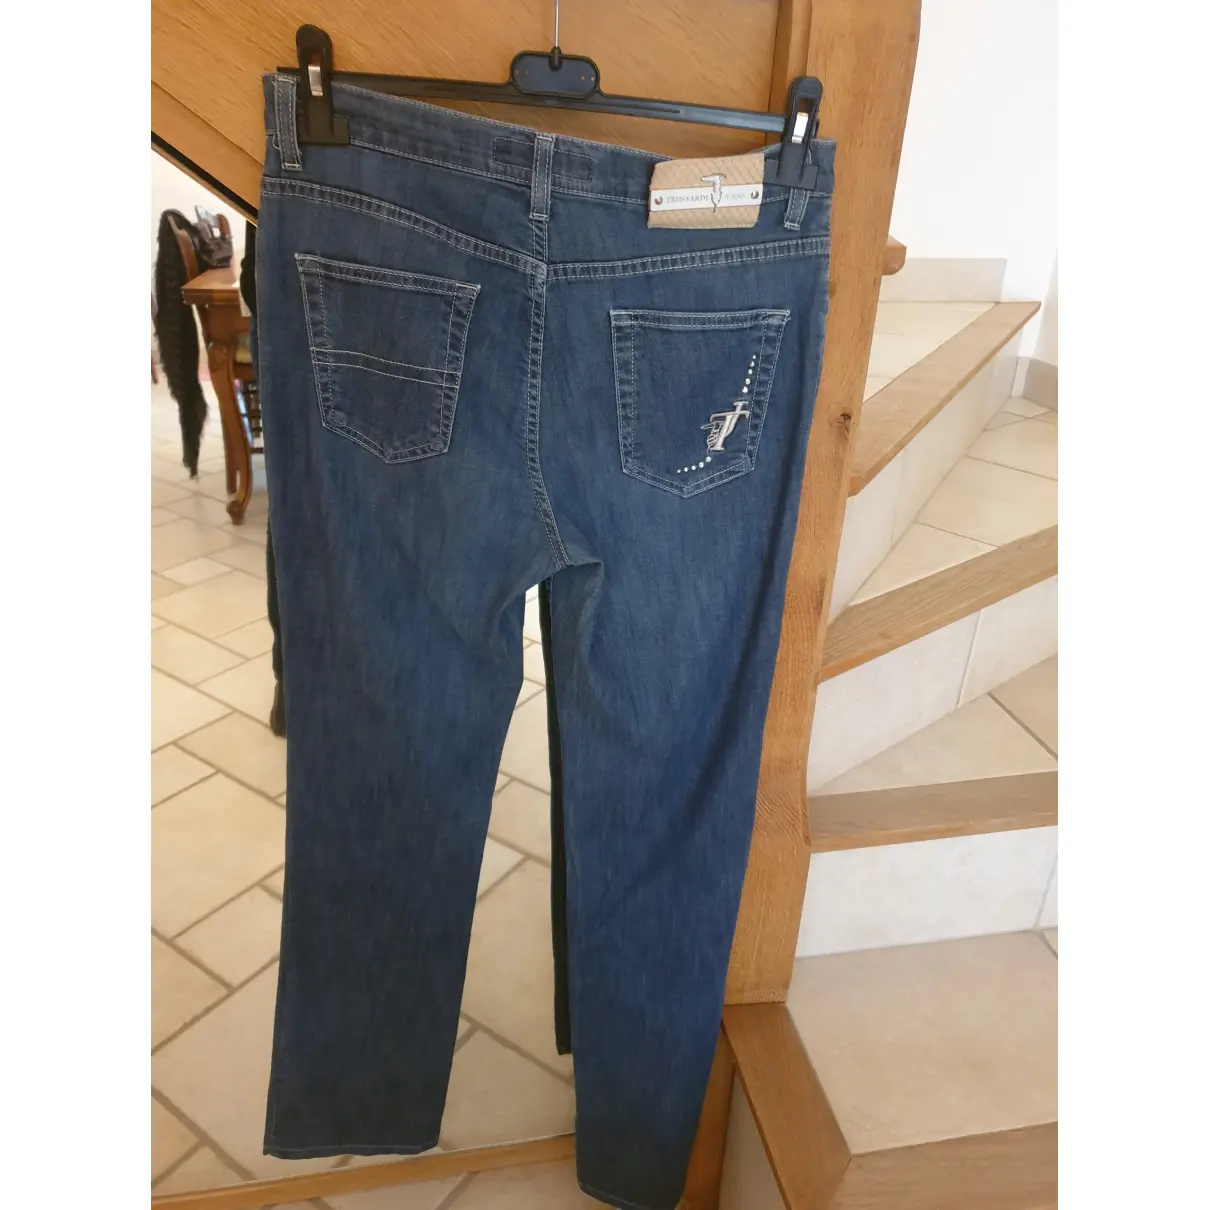 Buy Trussardi Jeans Jeans online